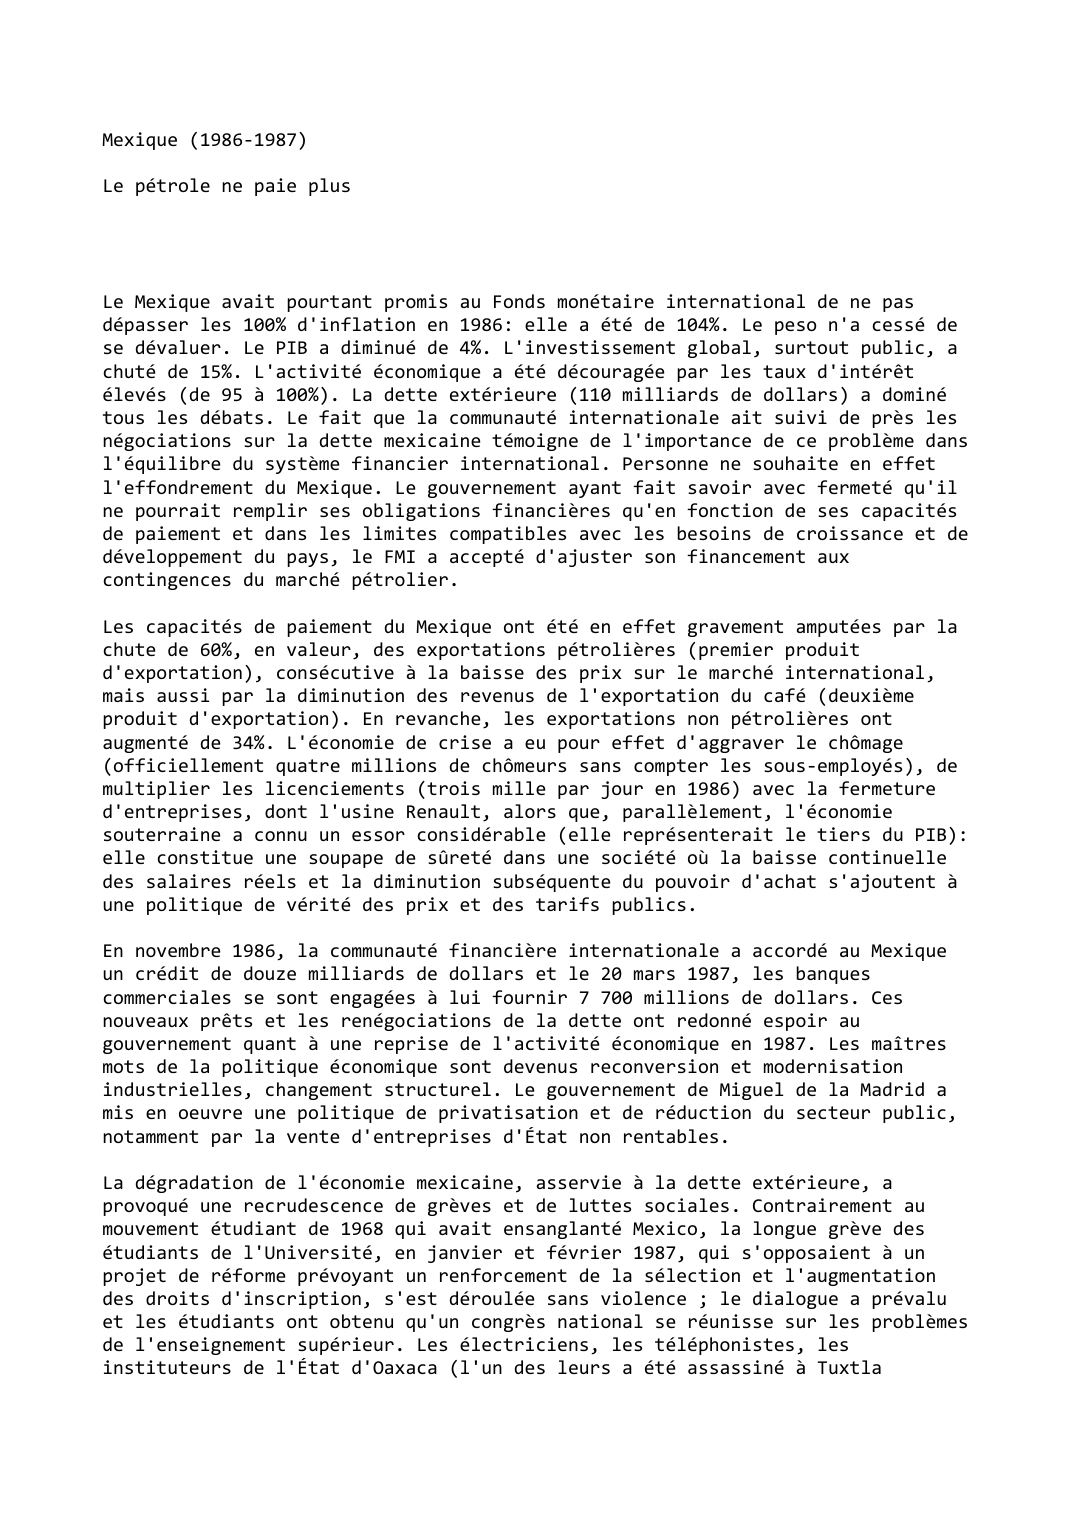 Prévisualisation du document Mexique (1986-1987)

Le pétrole ne paie plus